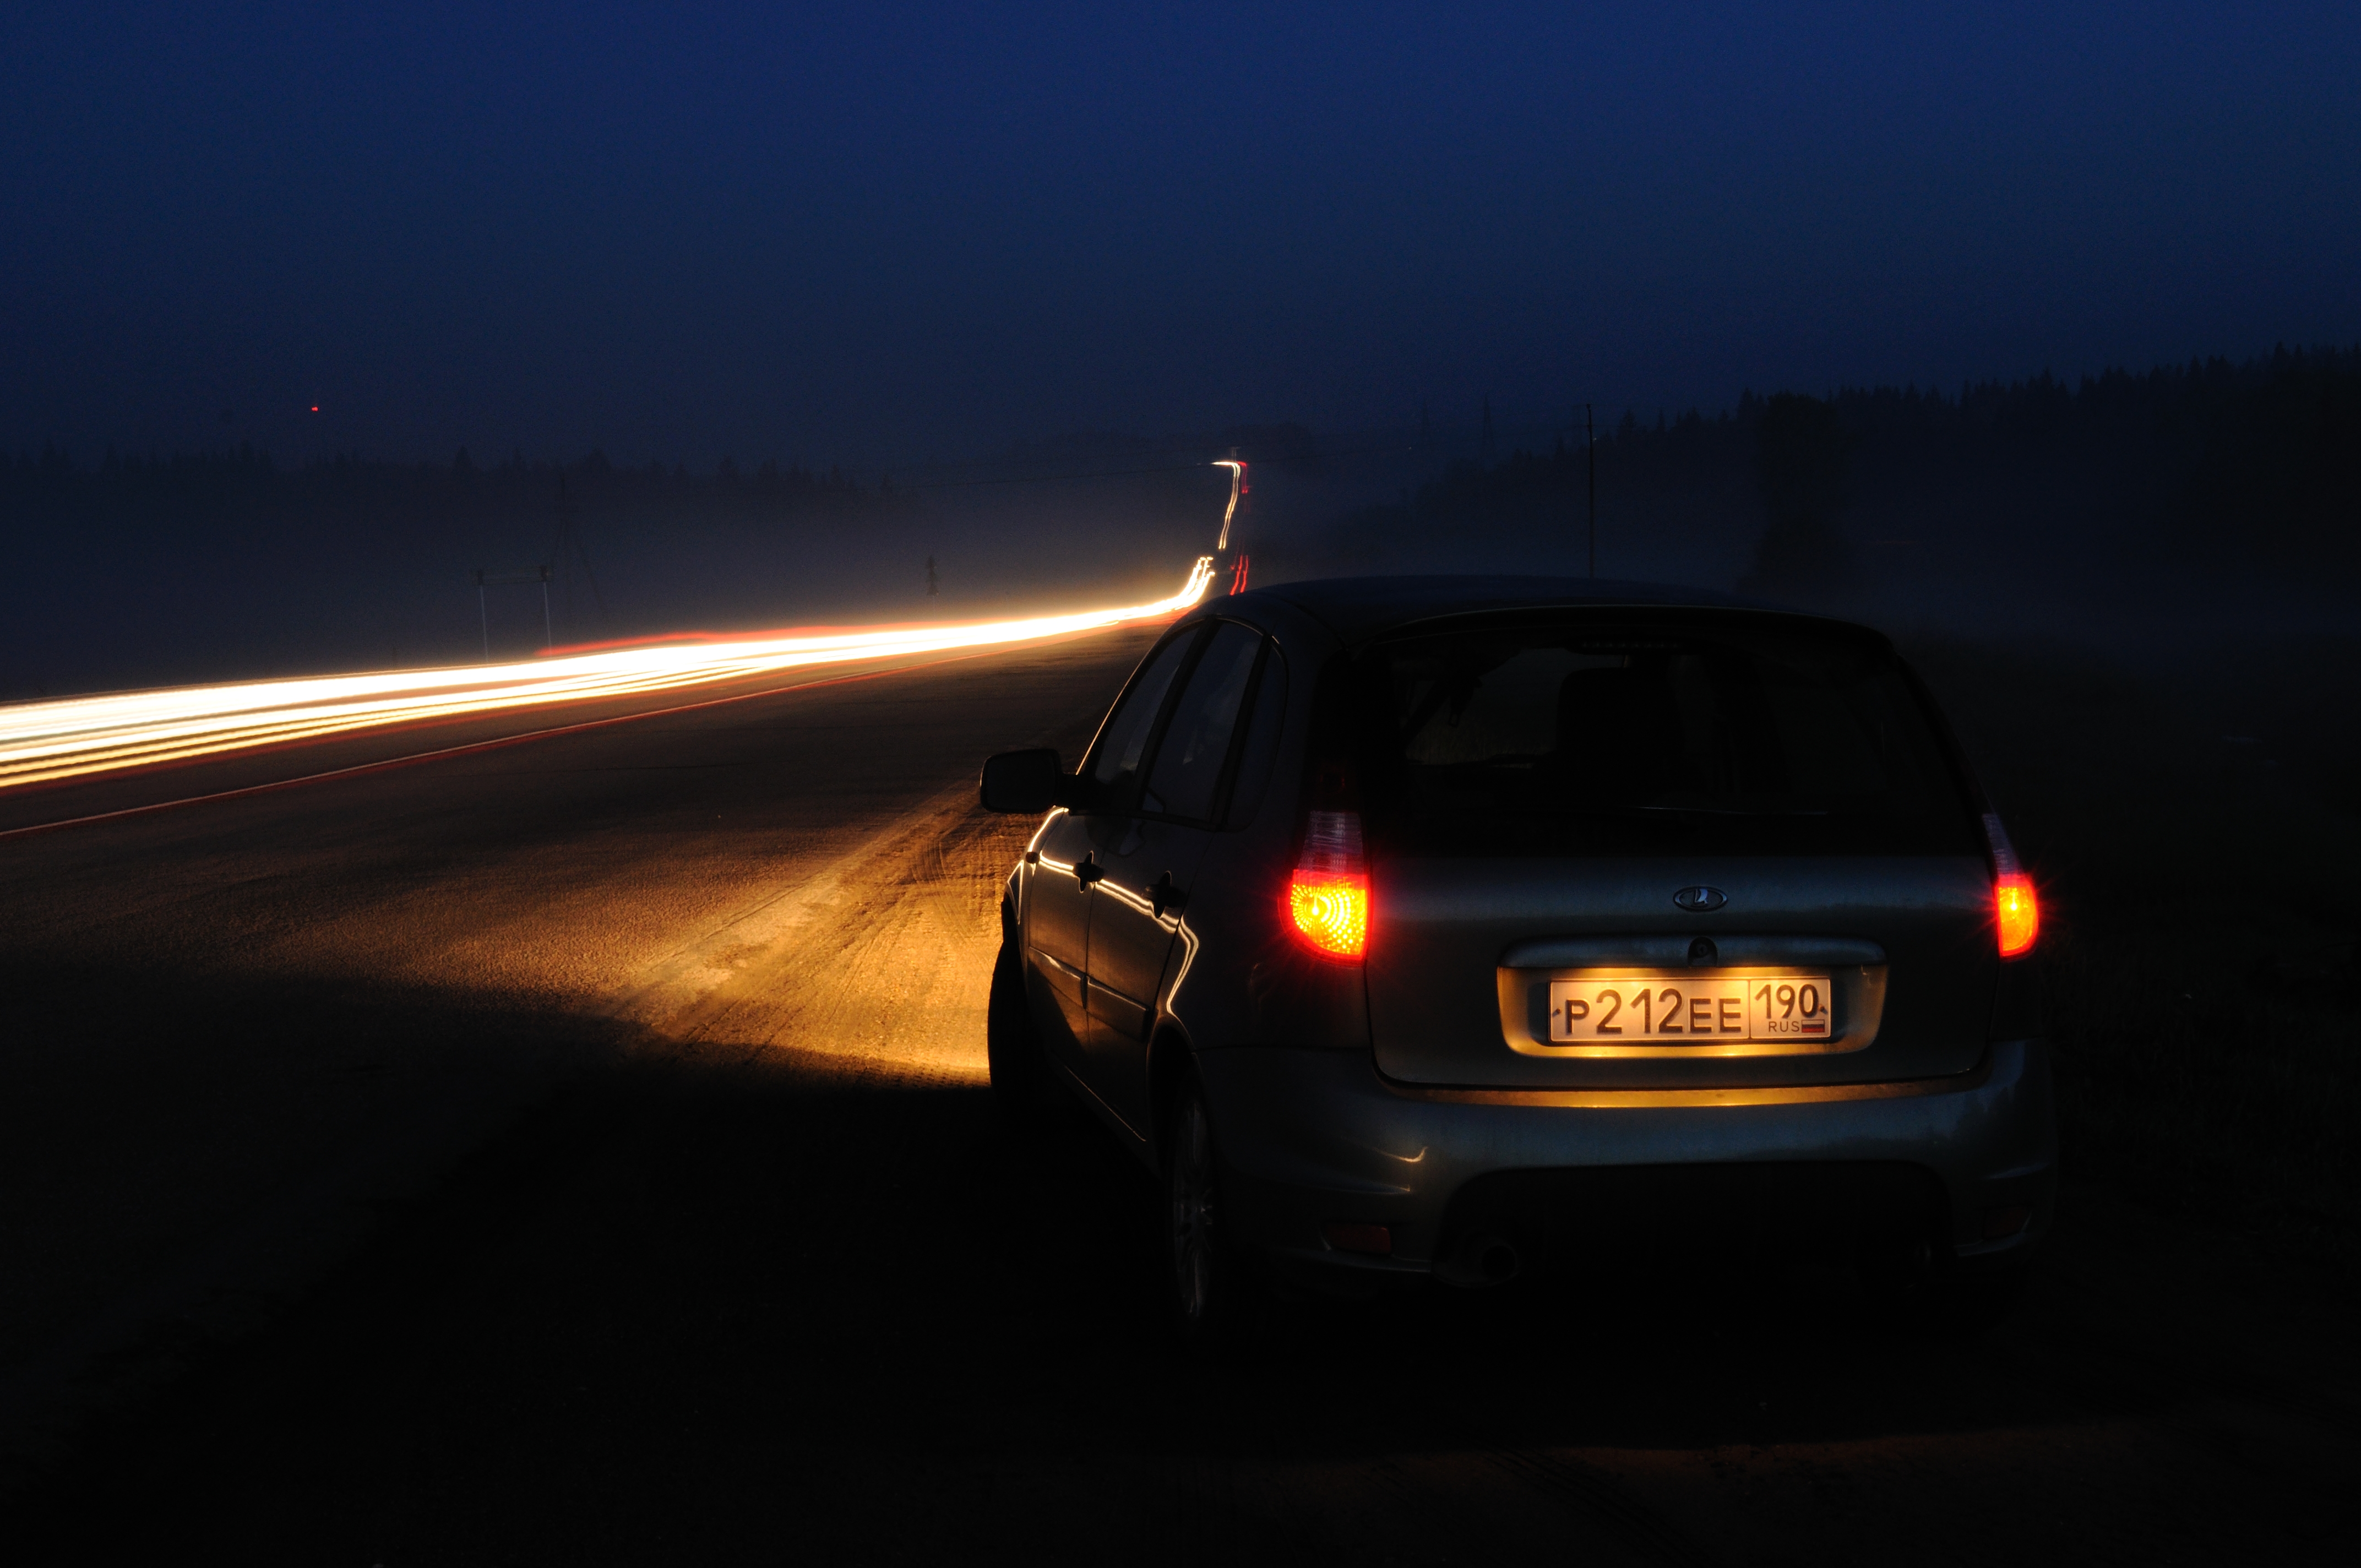 Ночь дорога свет фар. Машина ночью на дороге. Машина на трассе ночью. Ночь трасса машина. Фары автомобиля ночью.